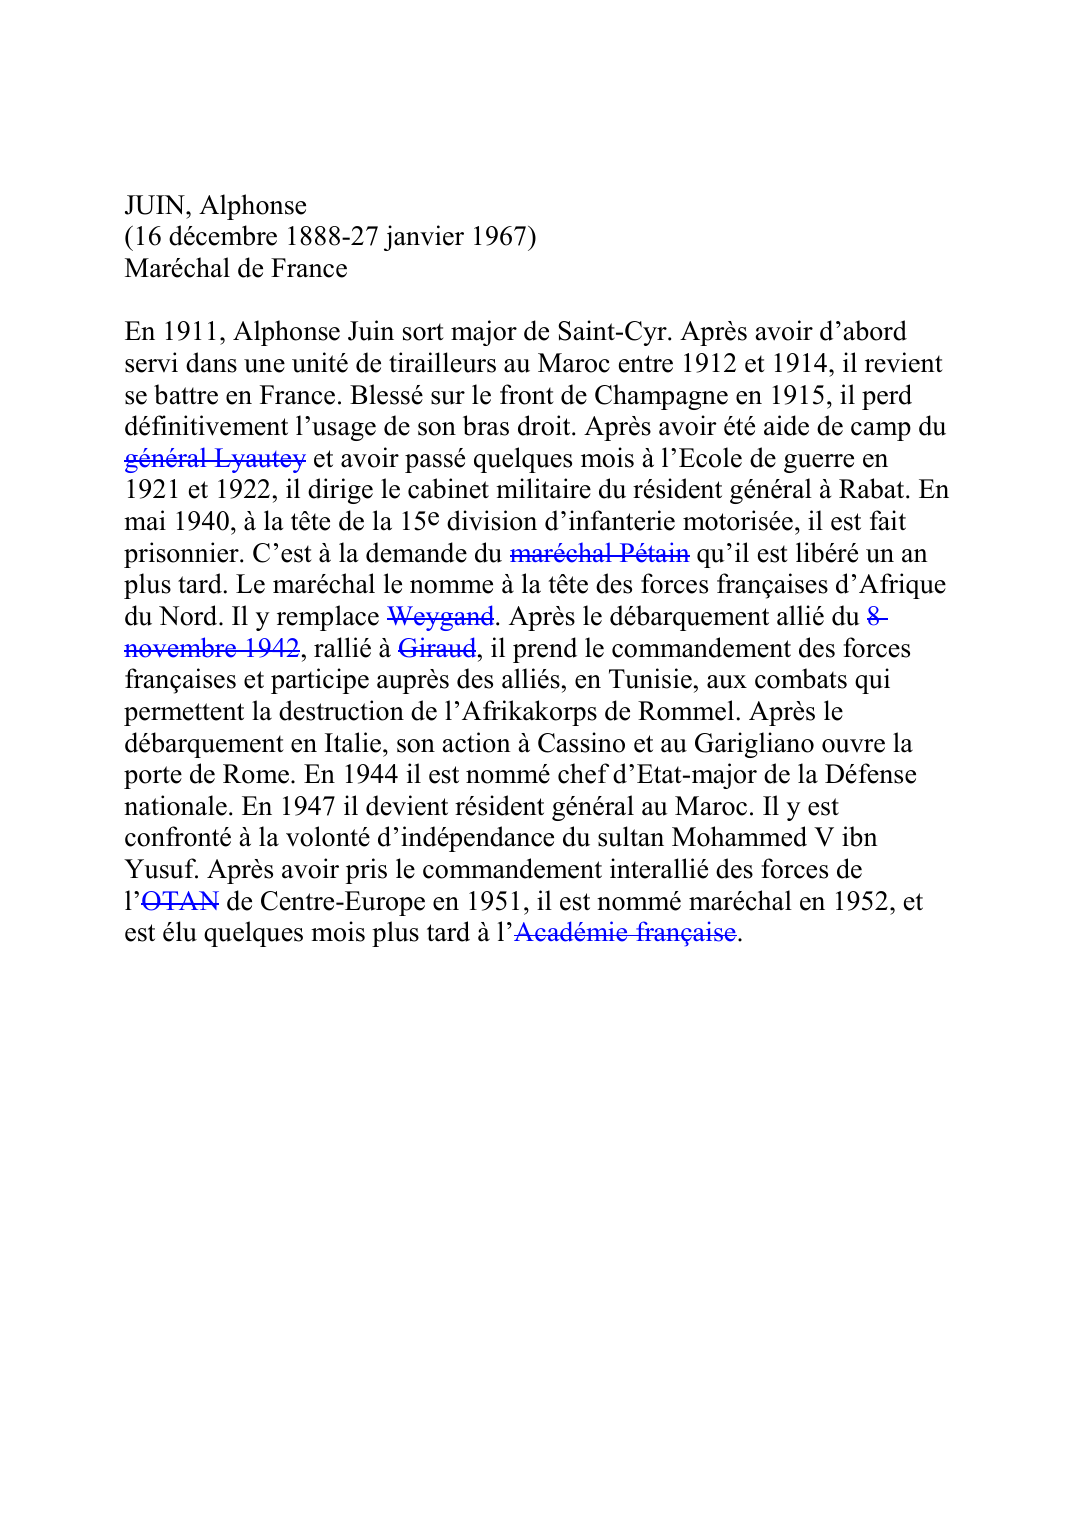 Prévisualisation du document JUIN, Alphonse(16 décembre 1888-27 janvier 1967)Maréchal de FranceEn 1911, Alphonse Juin sort major de Saint-Cyr.